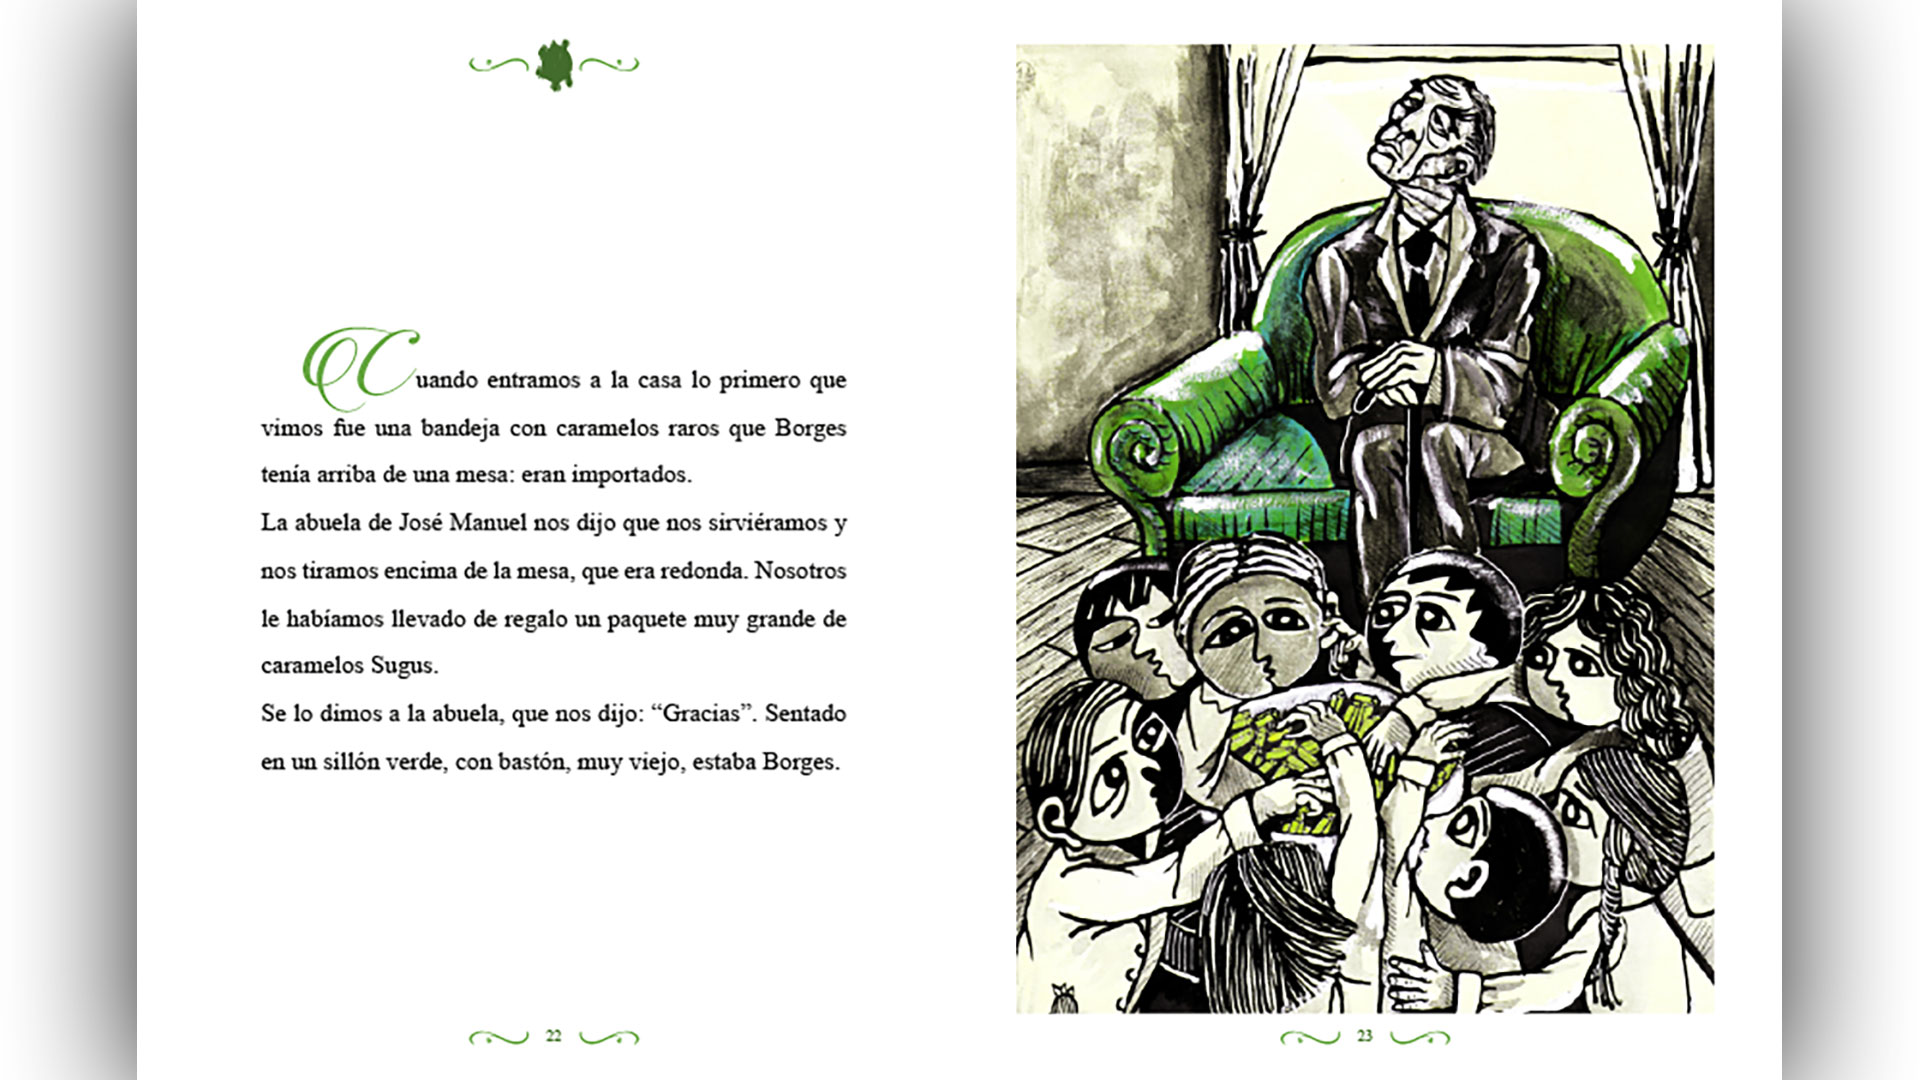 Borges y sus oyentes, niños que no sabían lo que significaba el apellido "Borges" para los argentinos.